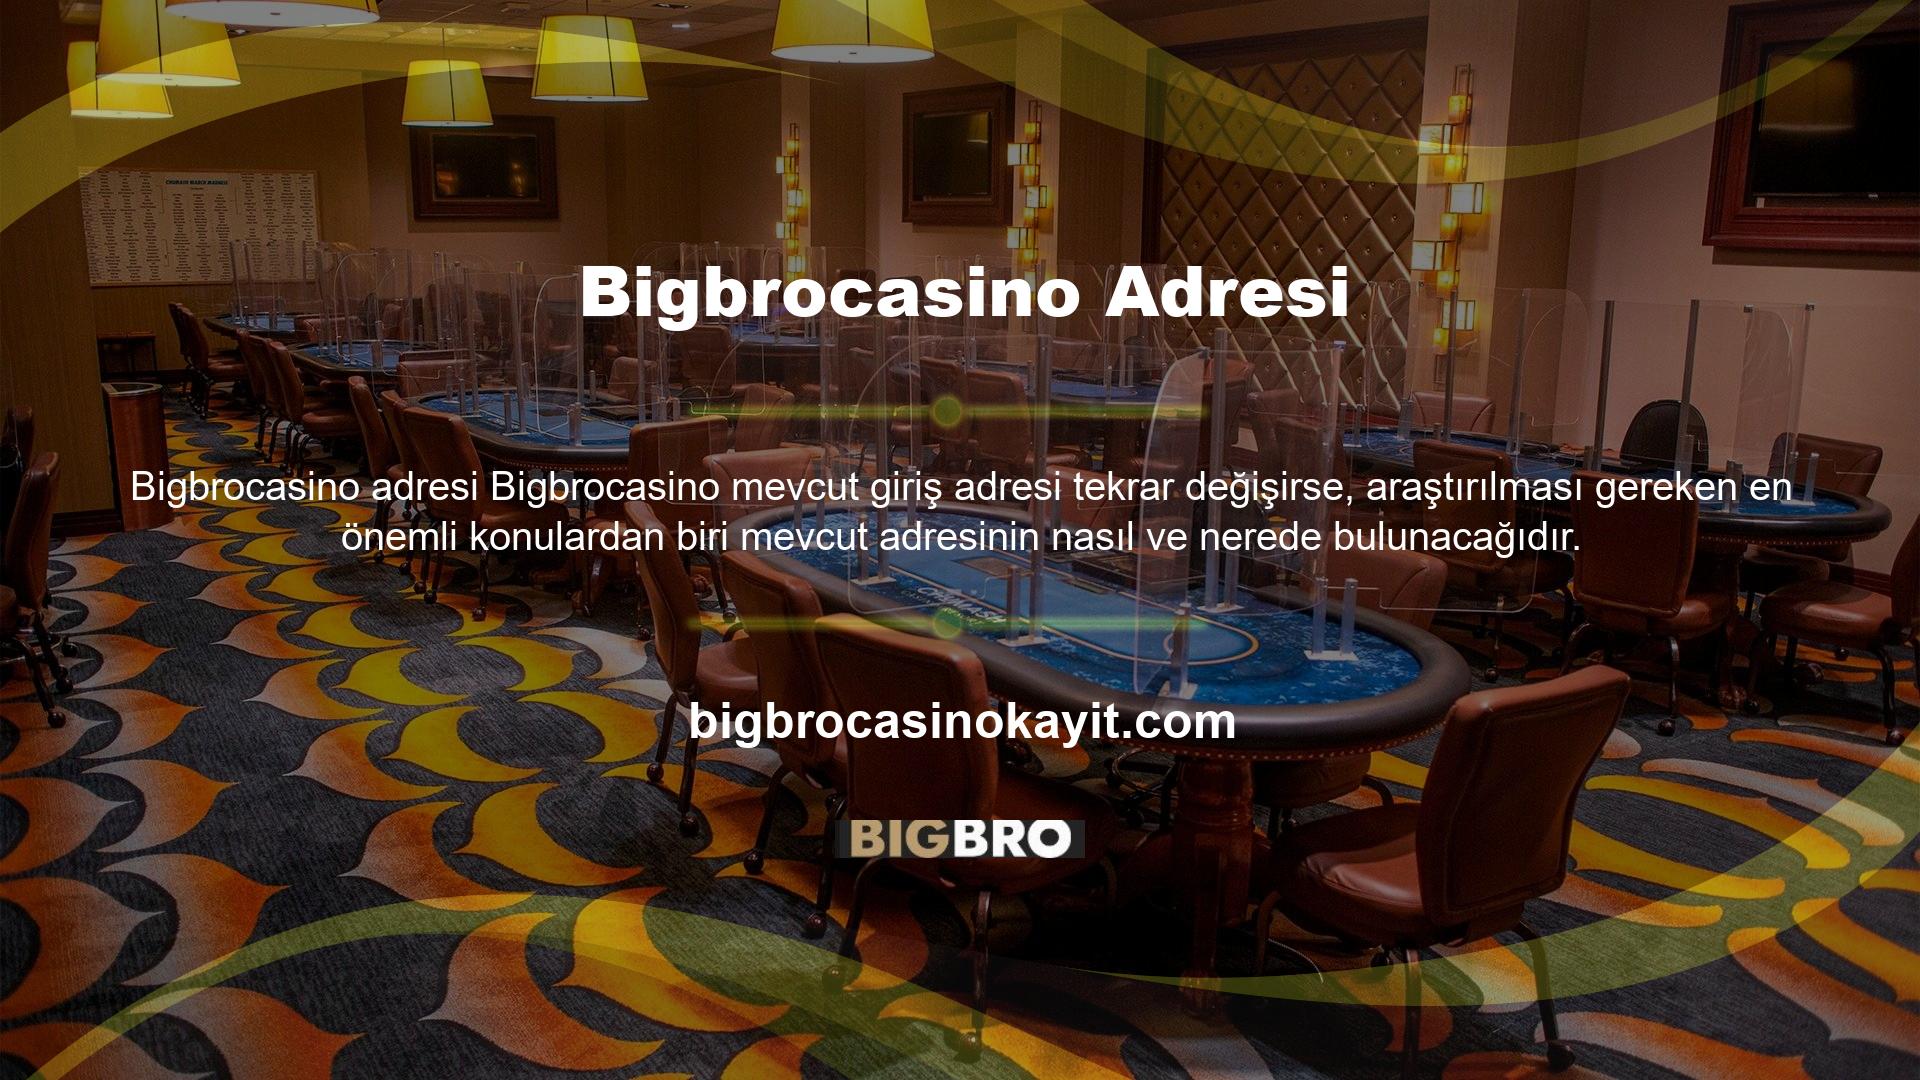 Şu anda Bigbrocasino giriş adreslerini bulmanın ana yöntemi, web sitesinin sosyal medya hesabı, Twitter hesabıdır